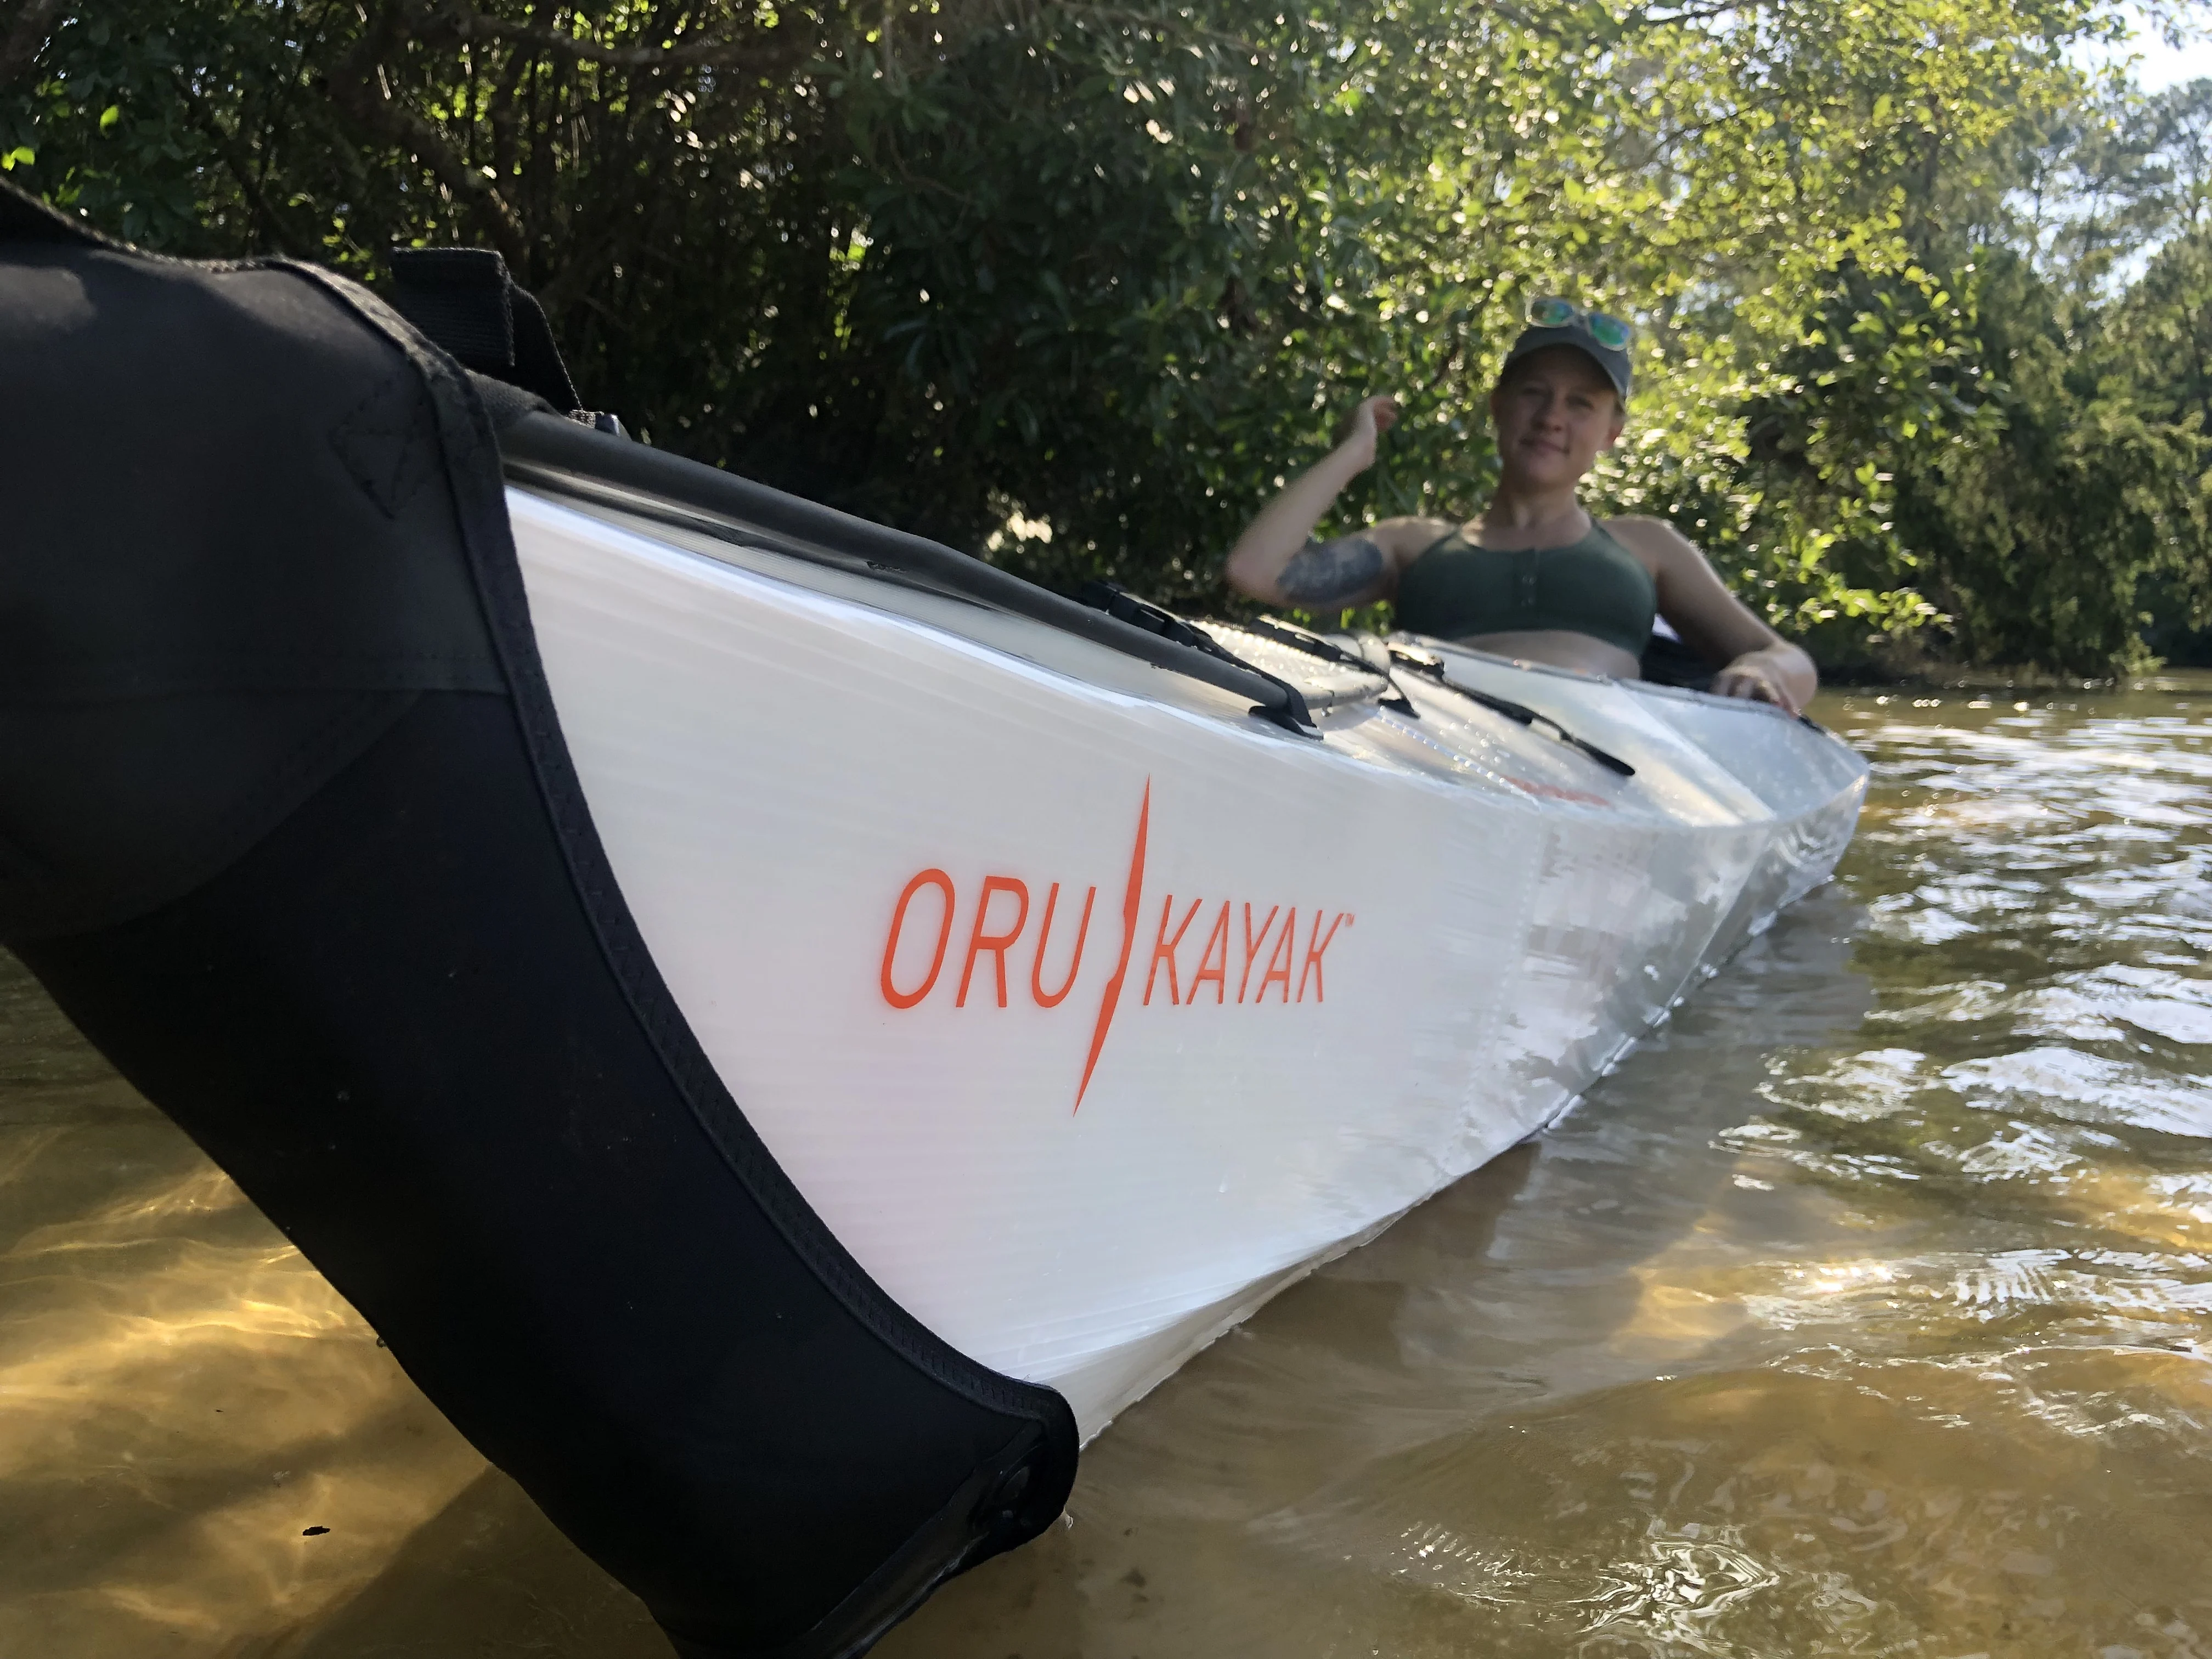 Oru Kayak Review: Sleek Lines Look Great